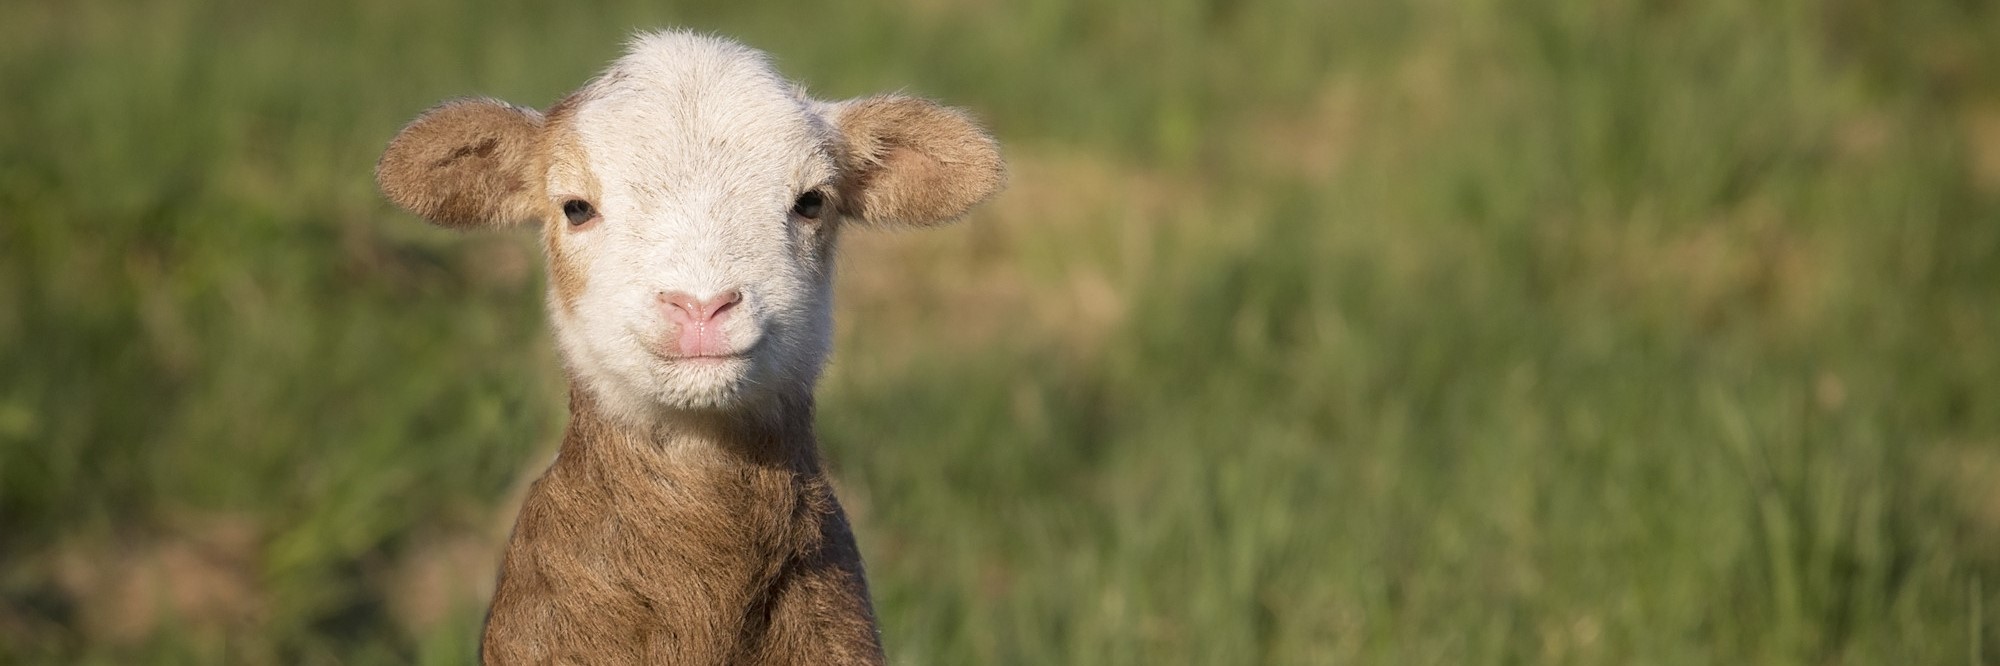 Sweet Lamb in Grassy Field